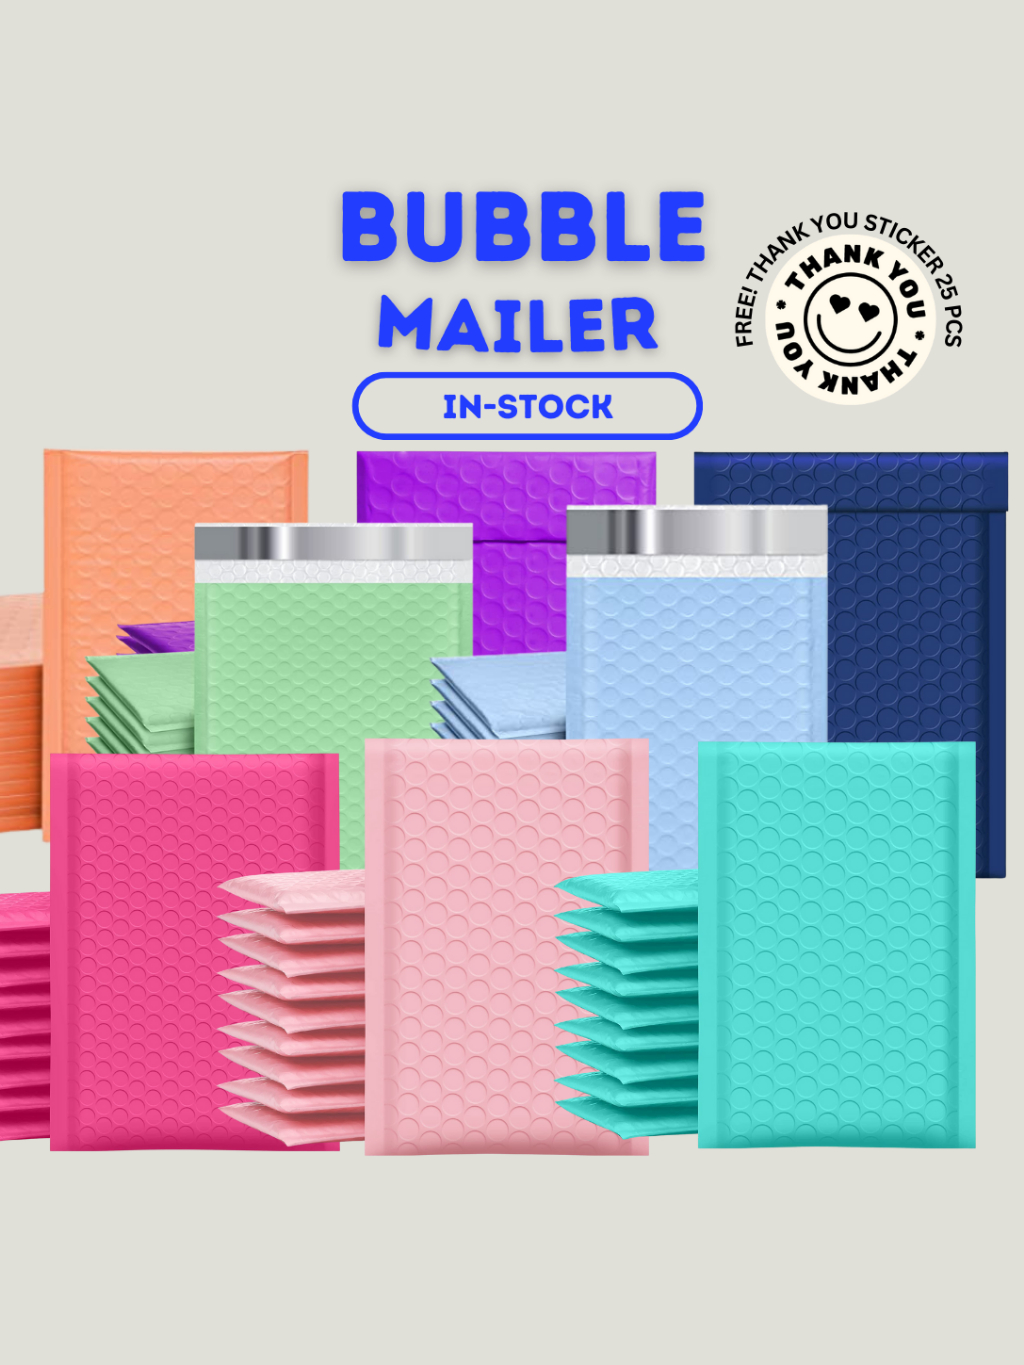 กรอกโค้ด-vy8xbu7d-ลด-65-50ซอง-แพค-size-12x18cm-ซองบับเบิ้ล-มากกว่า-10สี-ซองกันกระแทก-bubble-mailer